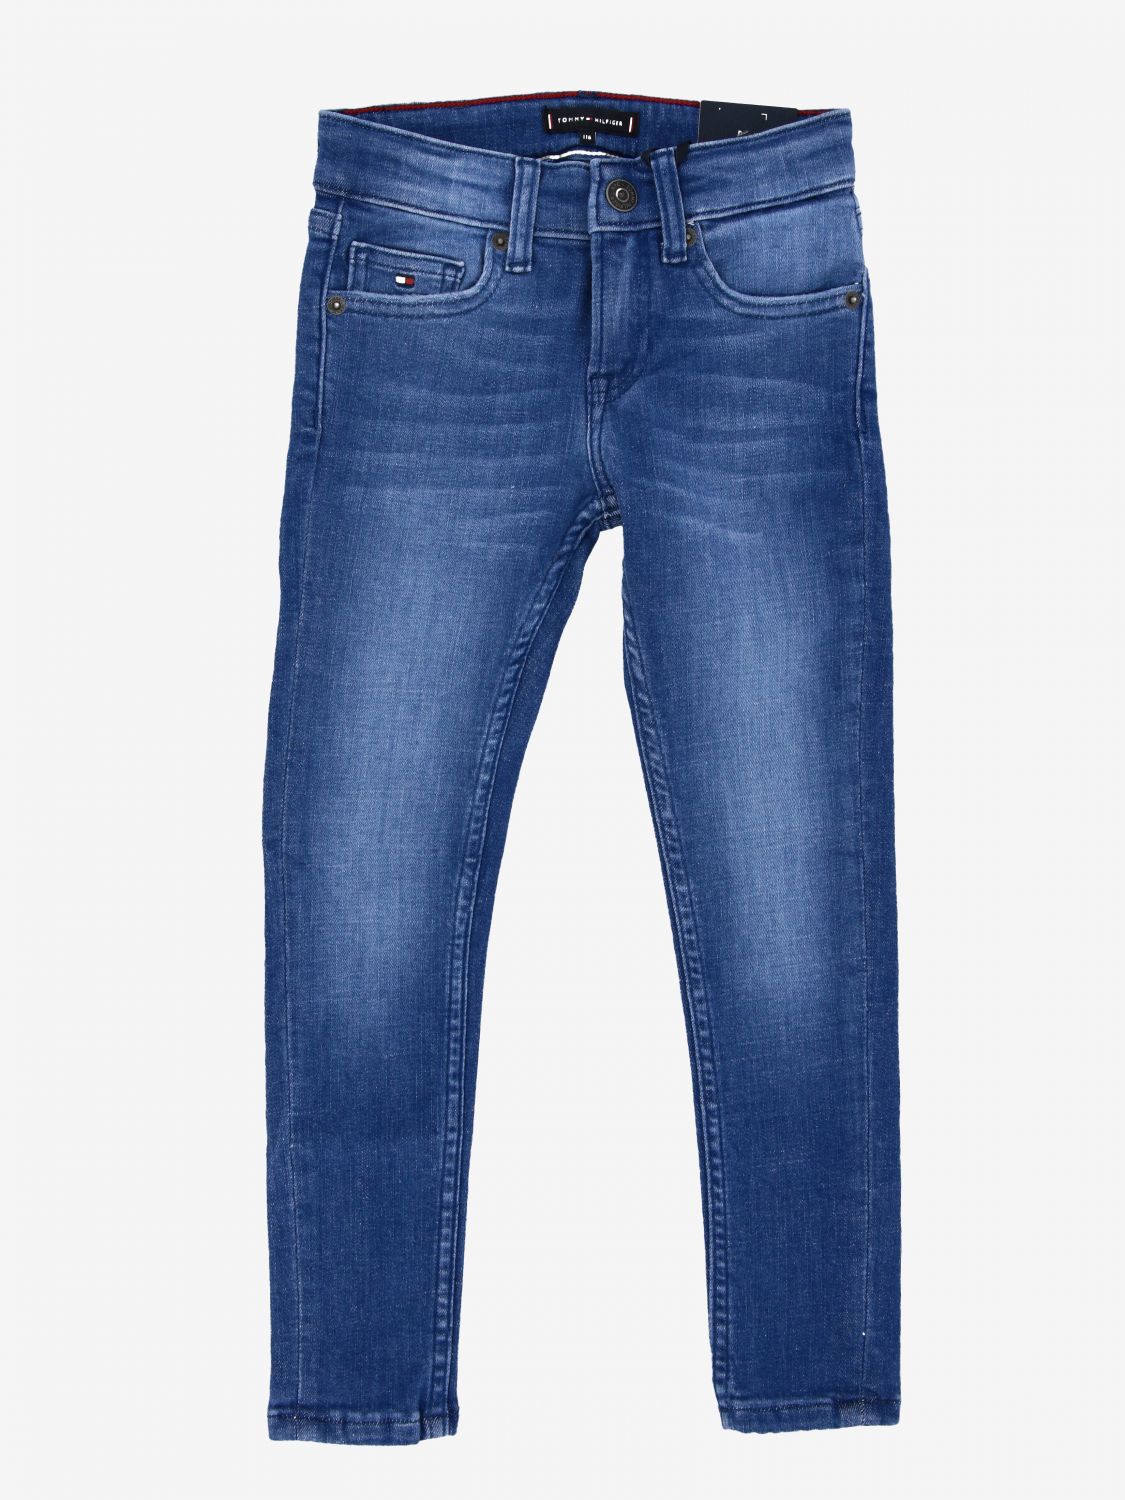 jeans tommy hilfiger outlet